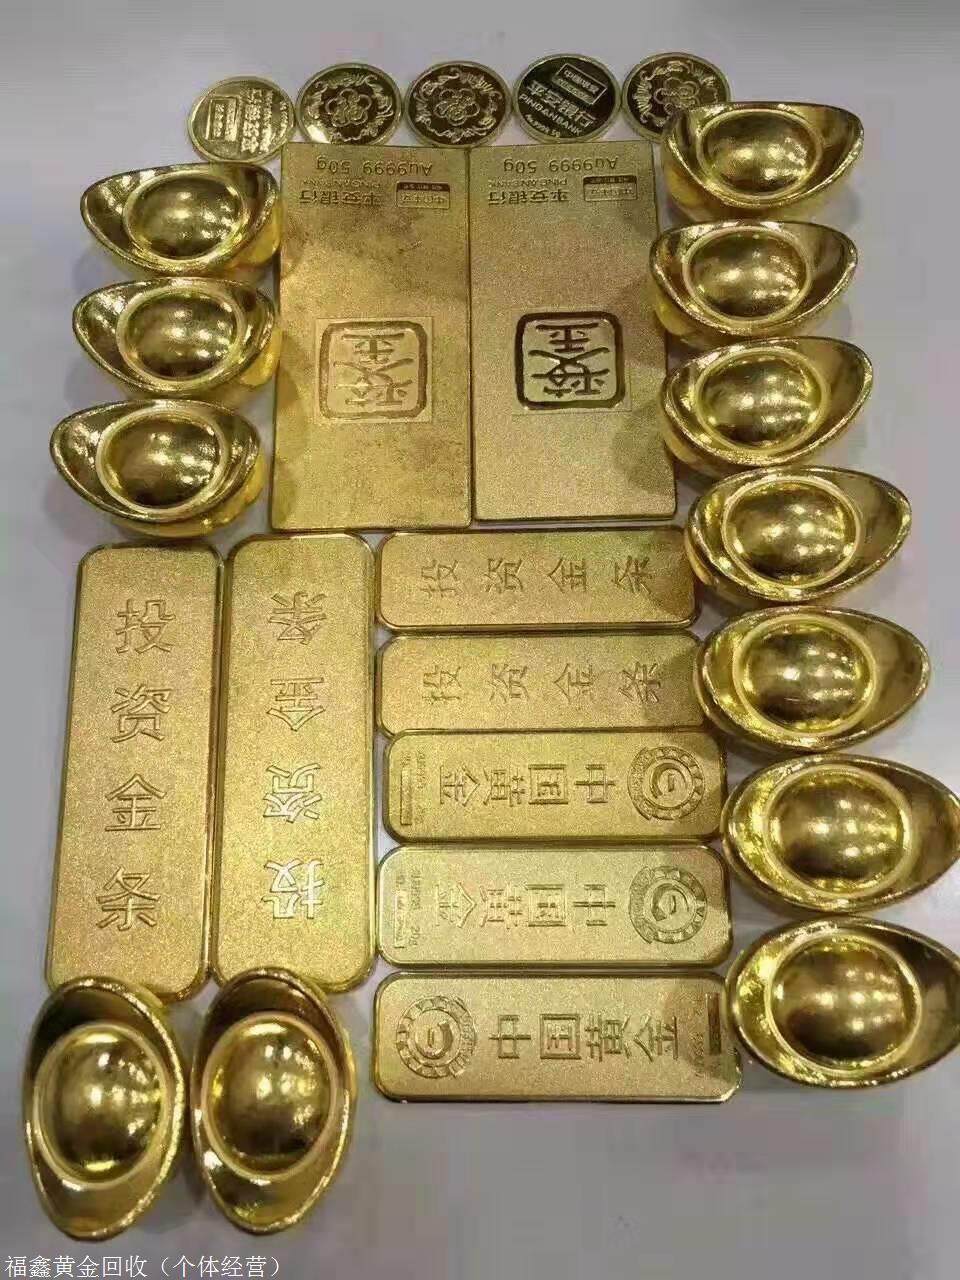 石家庄开发区黄金回收多少钱一克2022年9月19日今日回收黄金价格查询